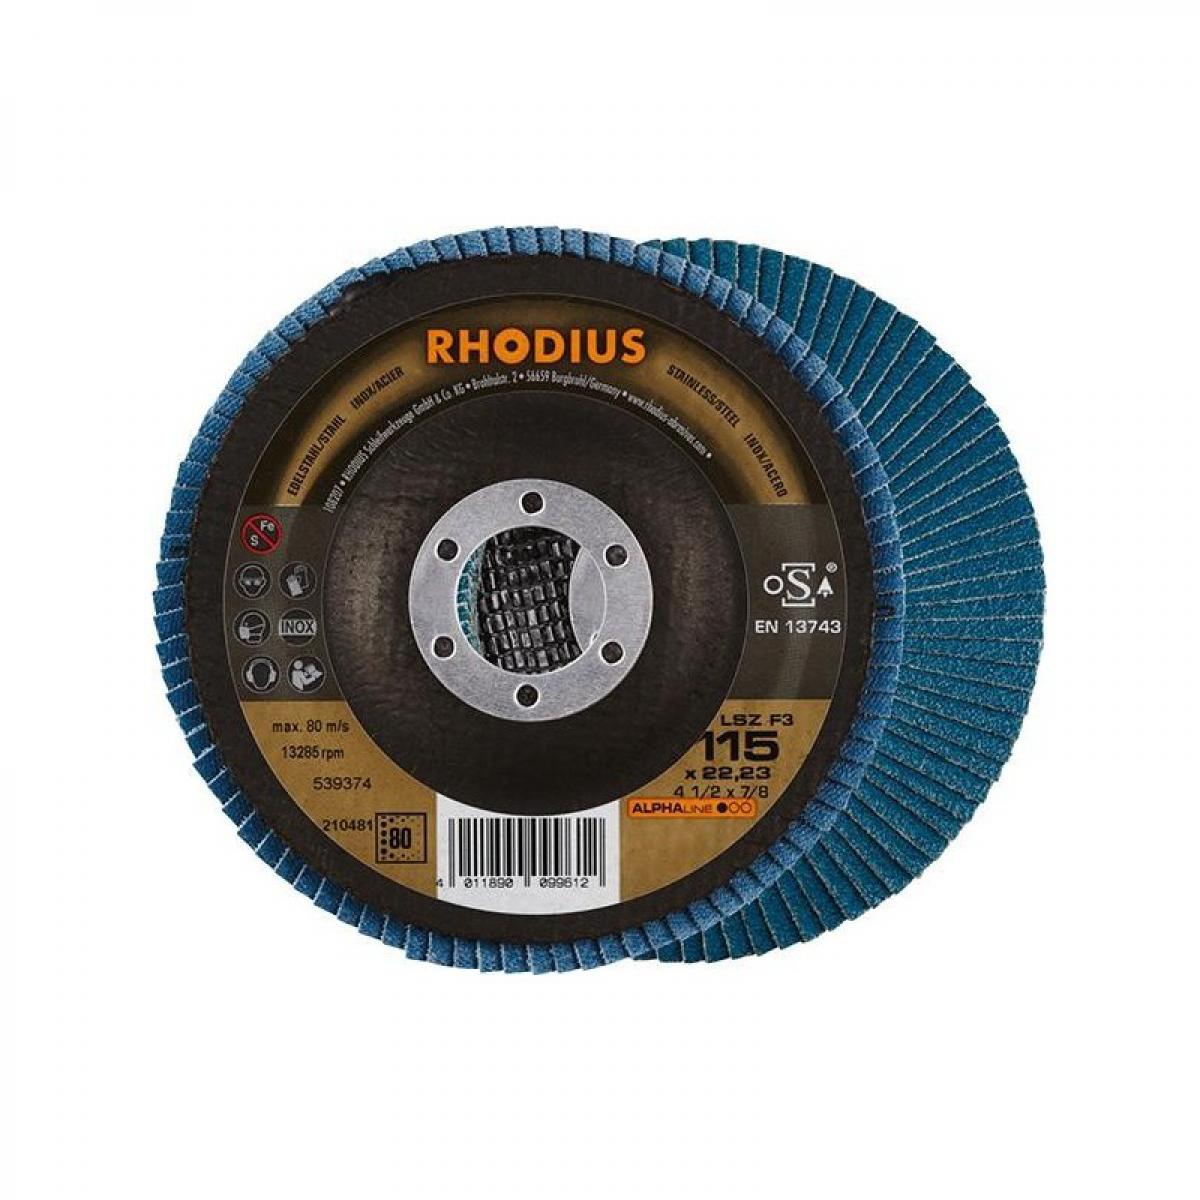 Rhodius - Disque à lamelles LSZ F3115mm K 80 Rhodius - Abrasifs et brosses